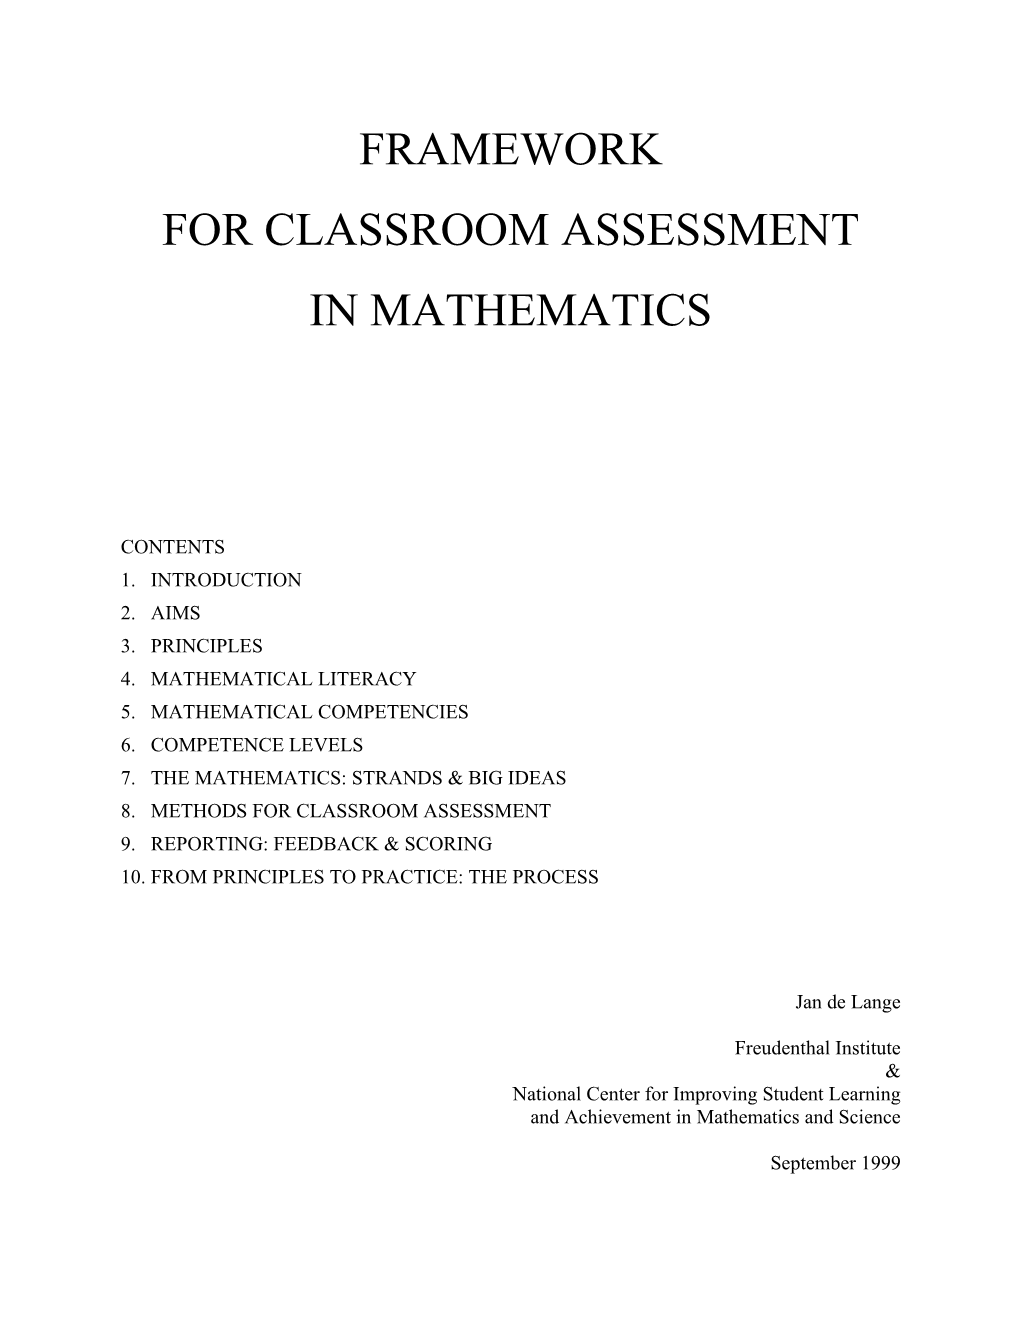 Framework for Classroom Assessment in Mathematics 2000